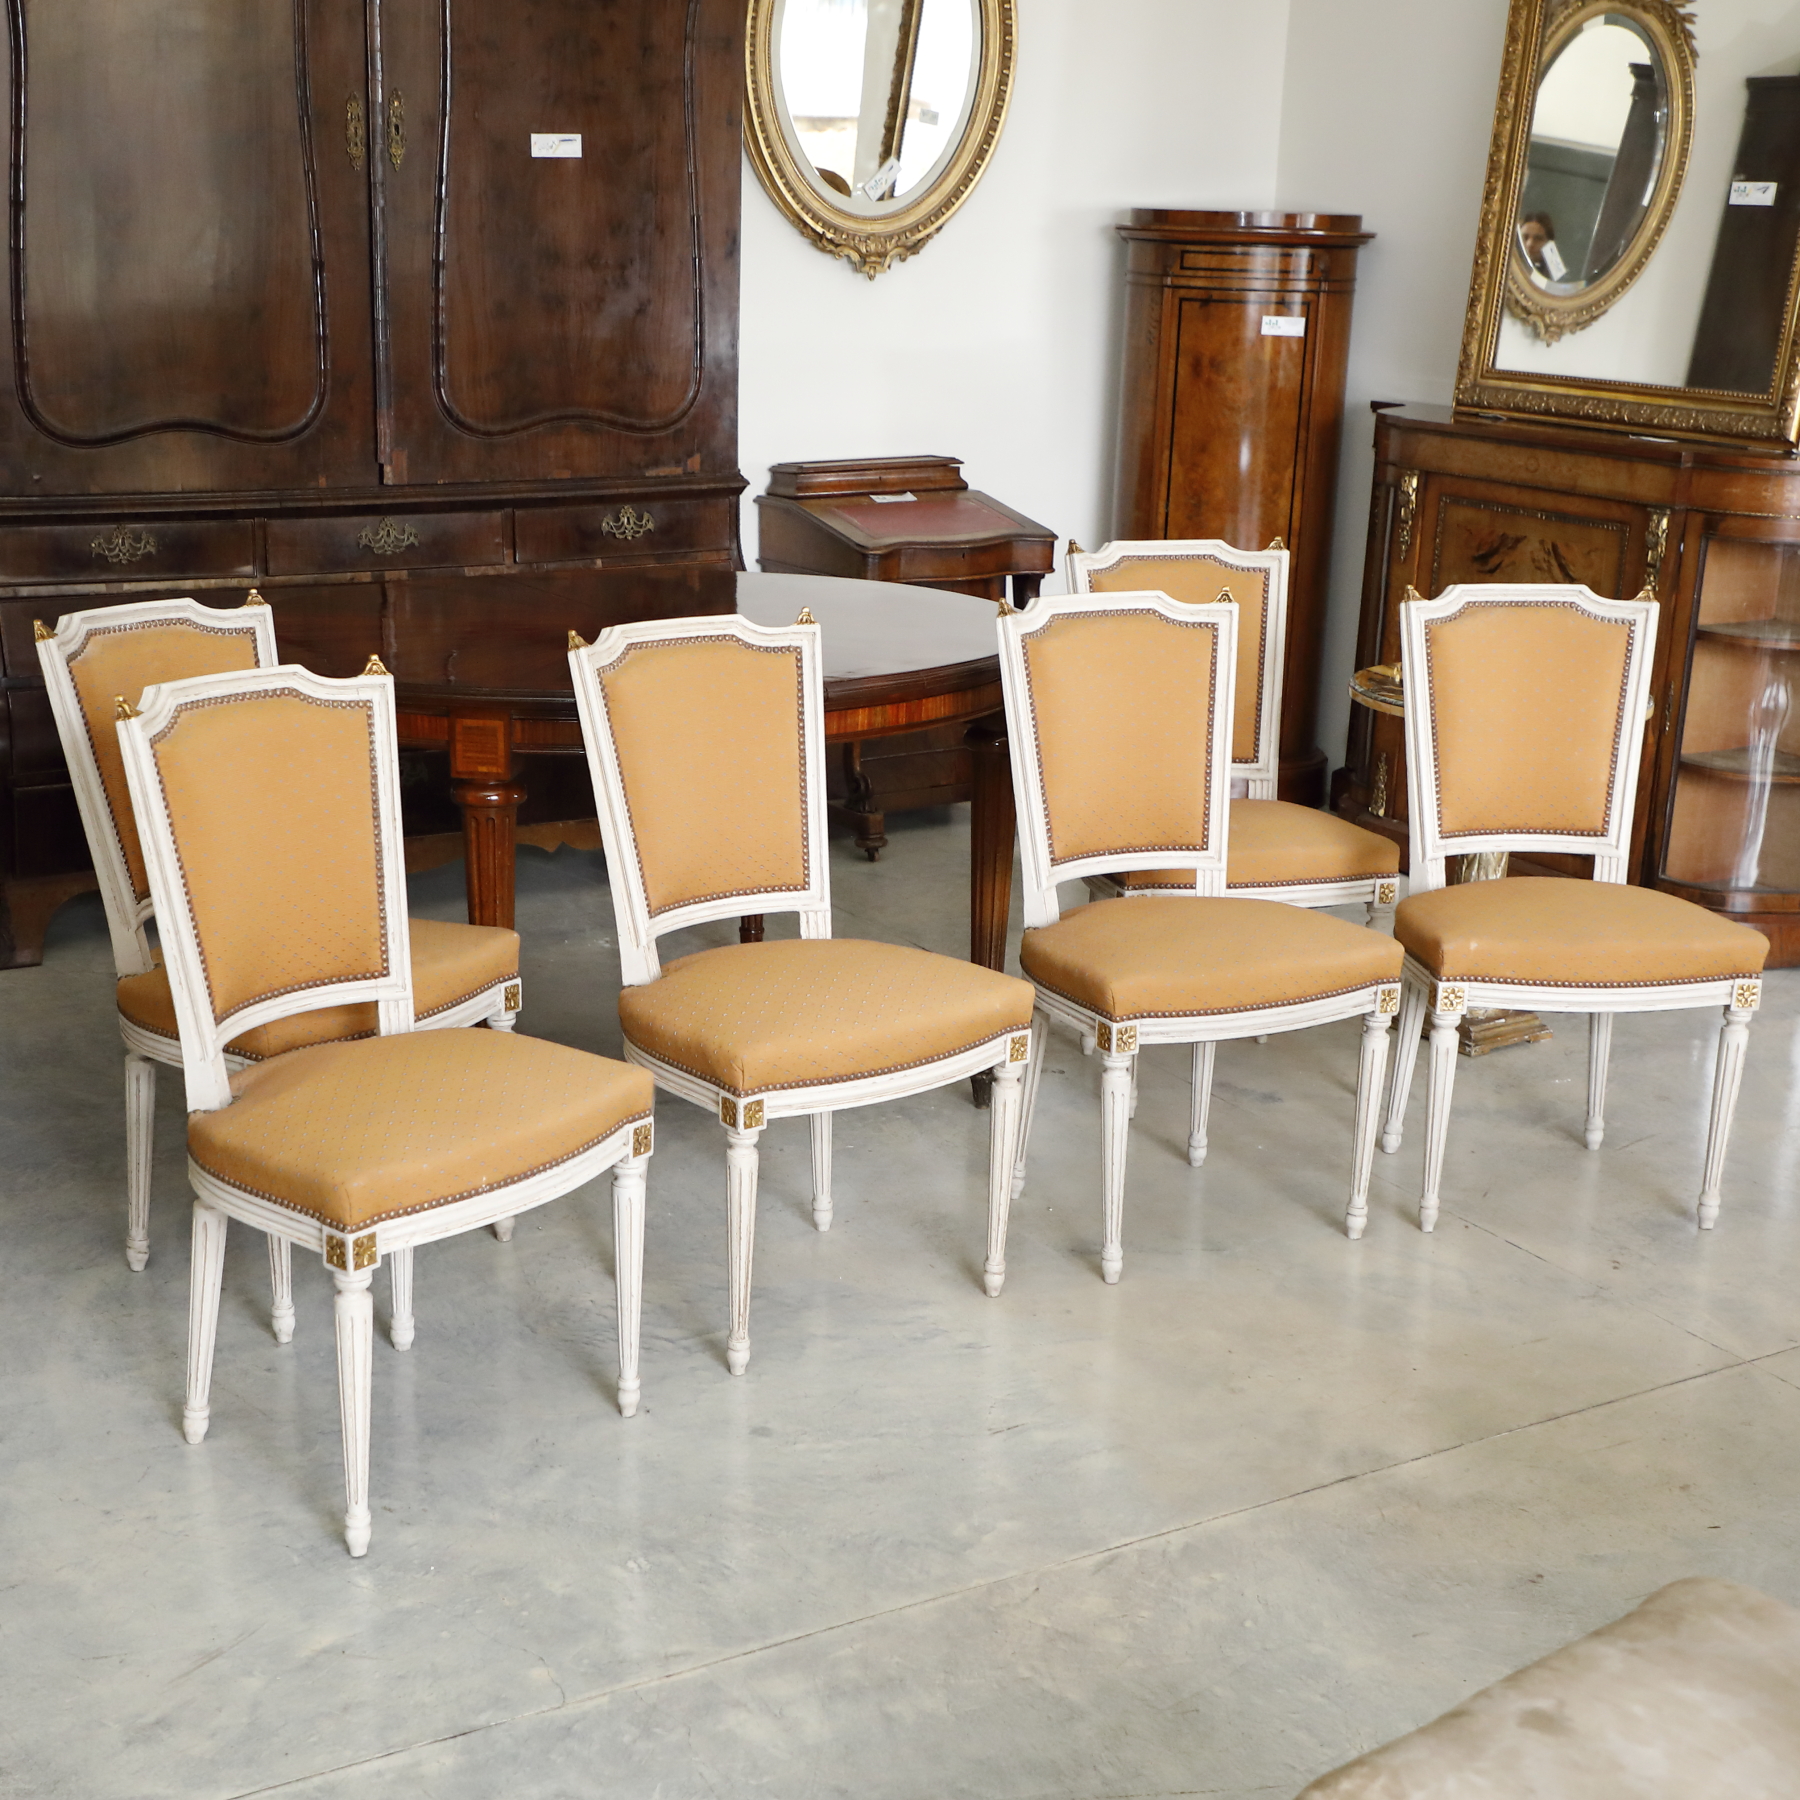 Gruppo di 8 sedie imbottite sia nello schienale che sulla seduta - Sedie e Poltrone